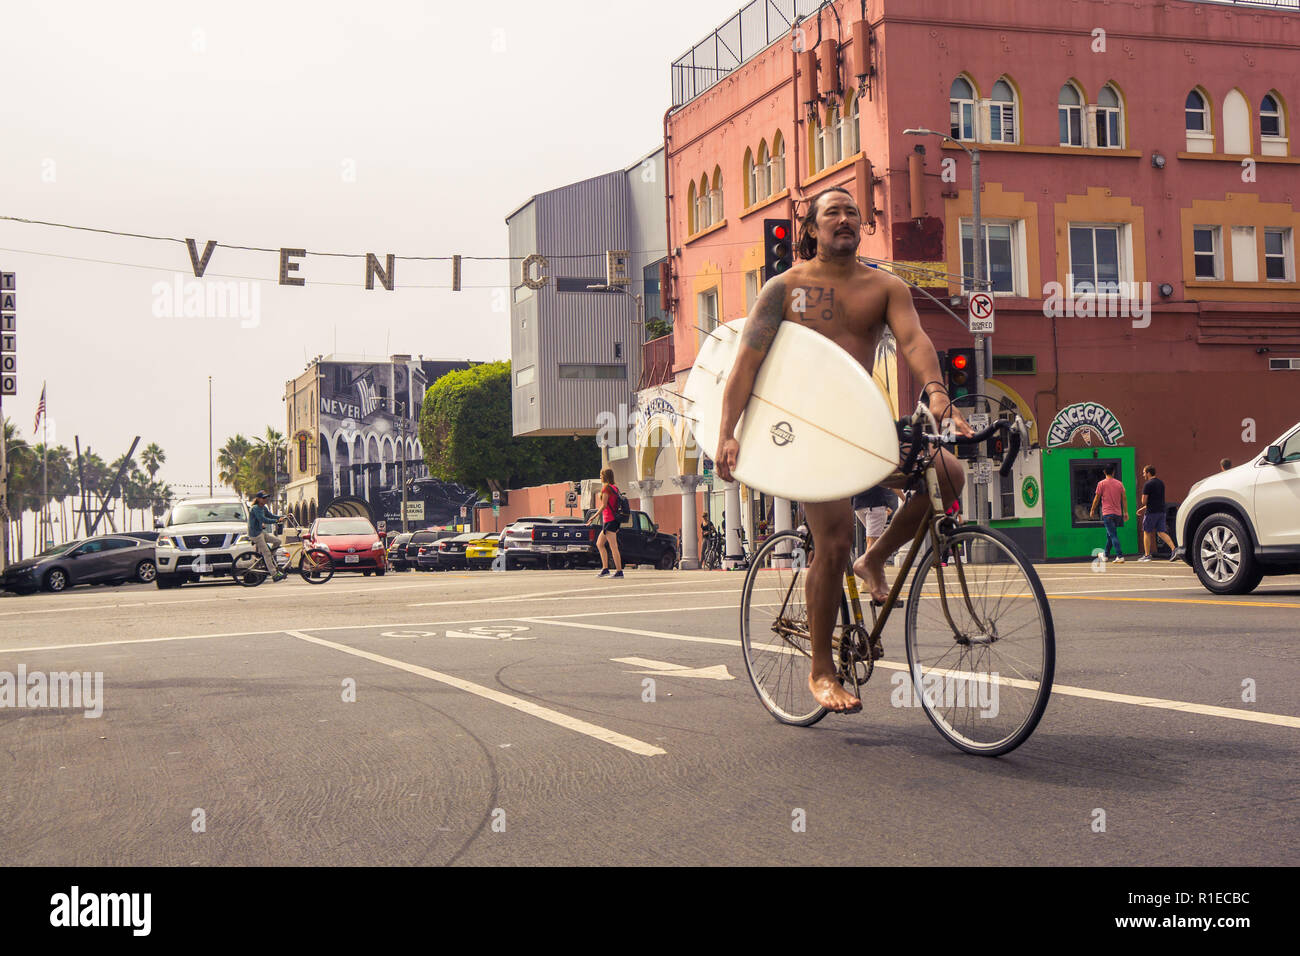 Un internaute de retour à la maison sur son vélo with surfboard at Venice Beach, Los Angeles, Californie Banque D'Images